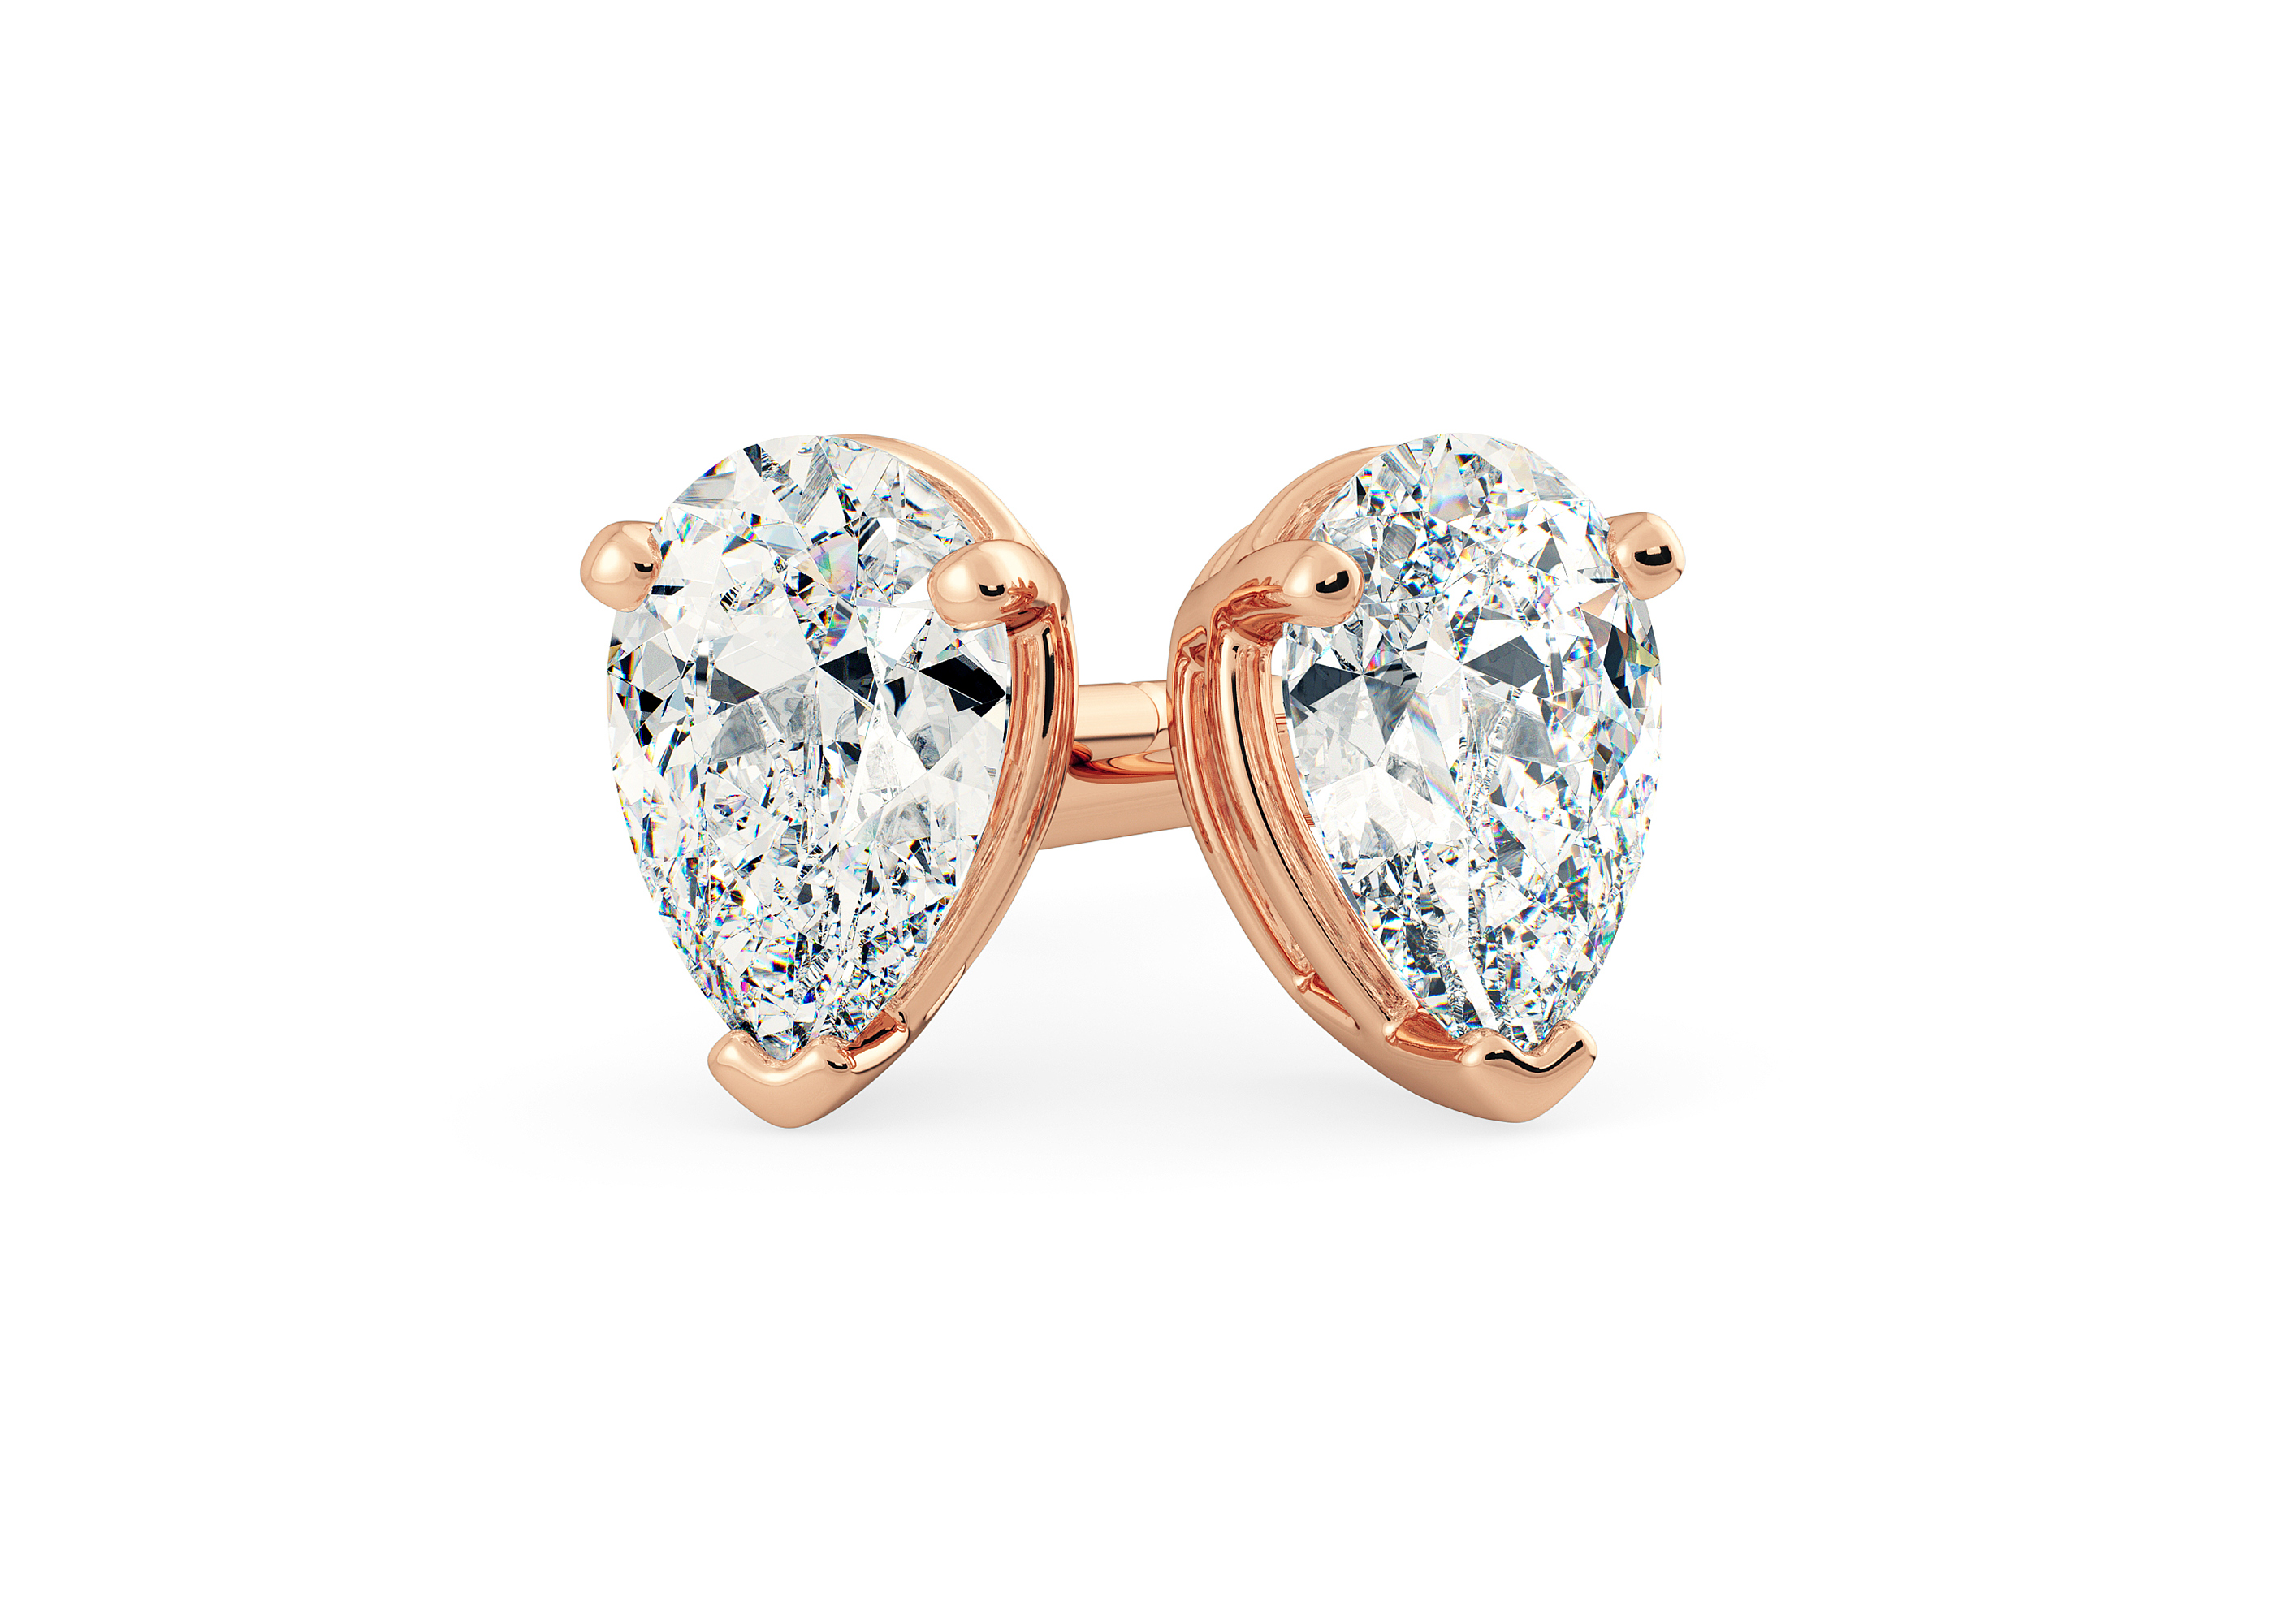 Two Carat Pear Diamond Stud Earrings in 18K Rose Gold